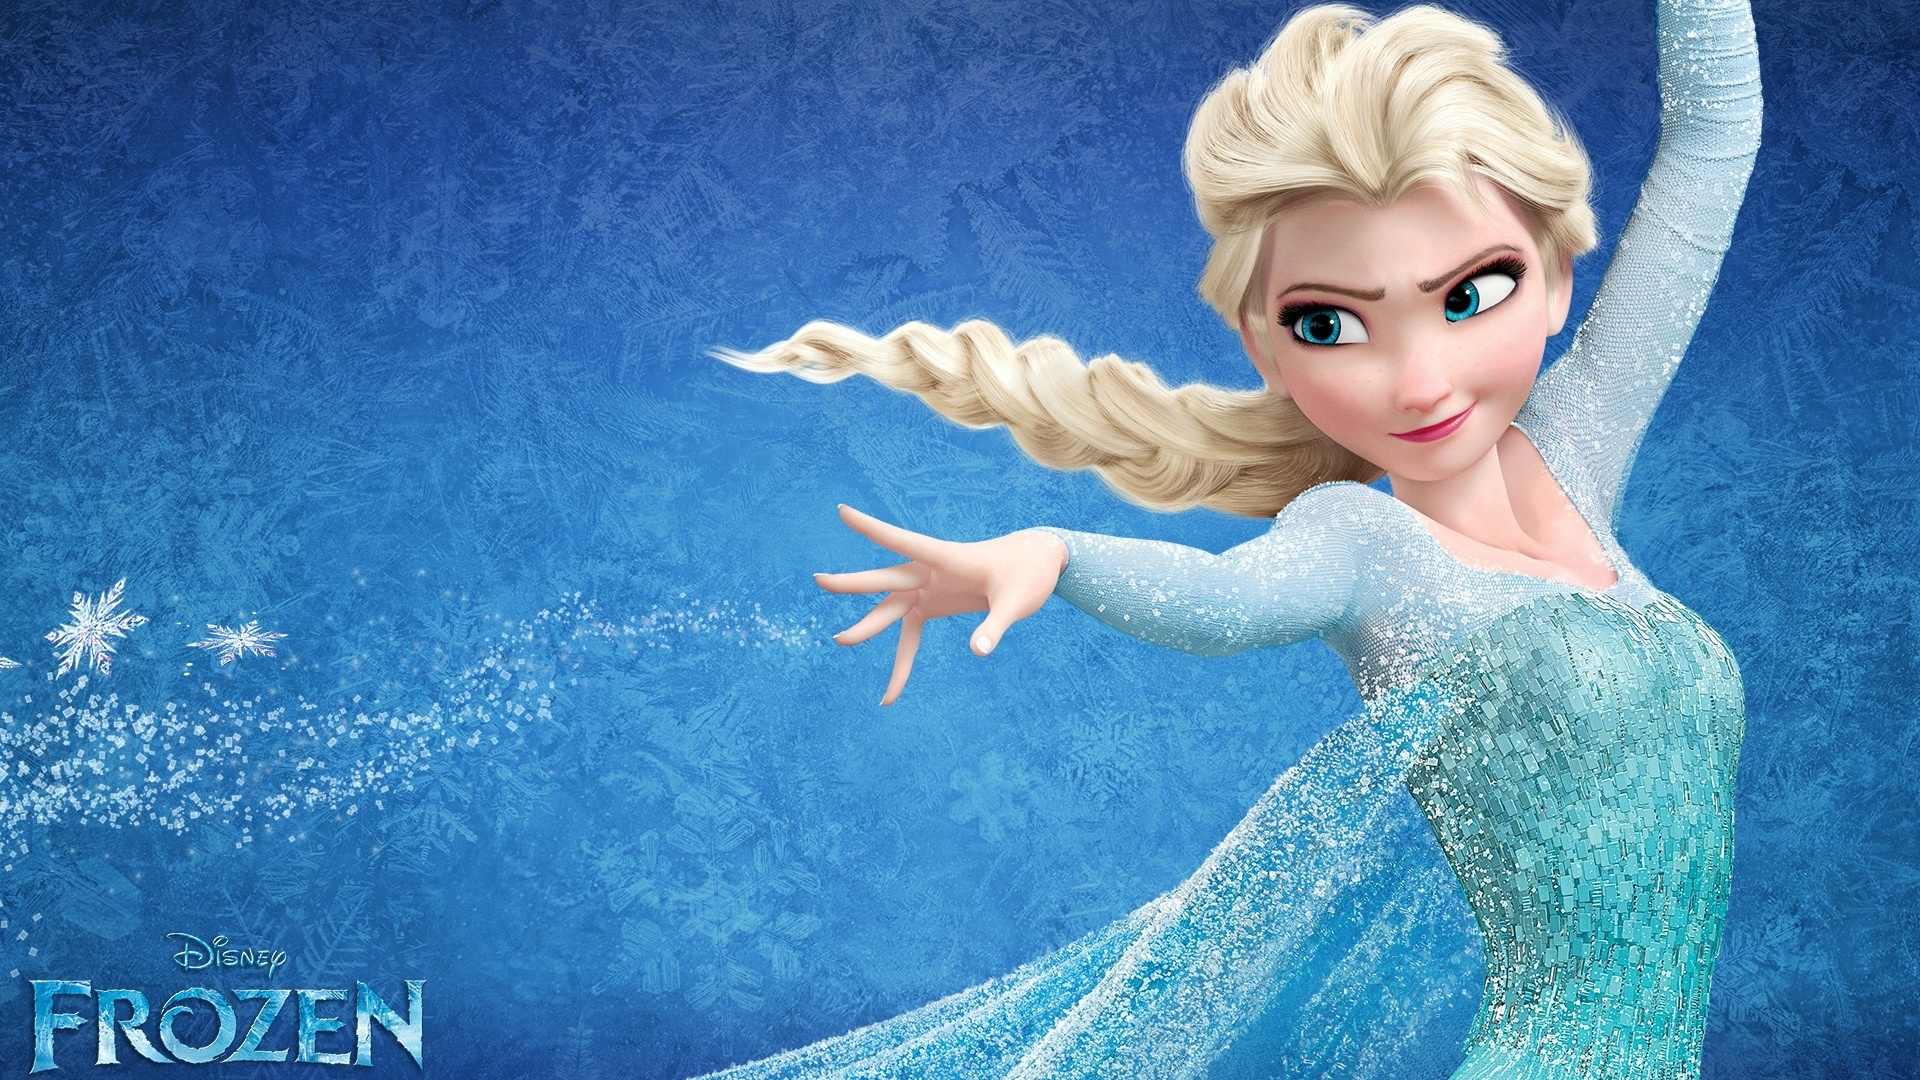 Frozen Elsa for 1920 x 1080 HDTV 1080p resolution